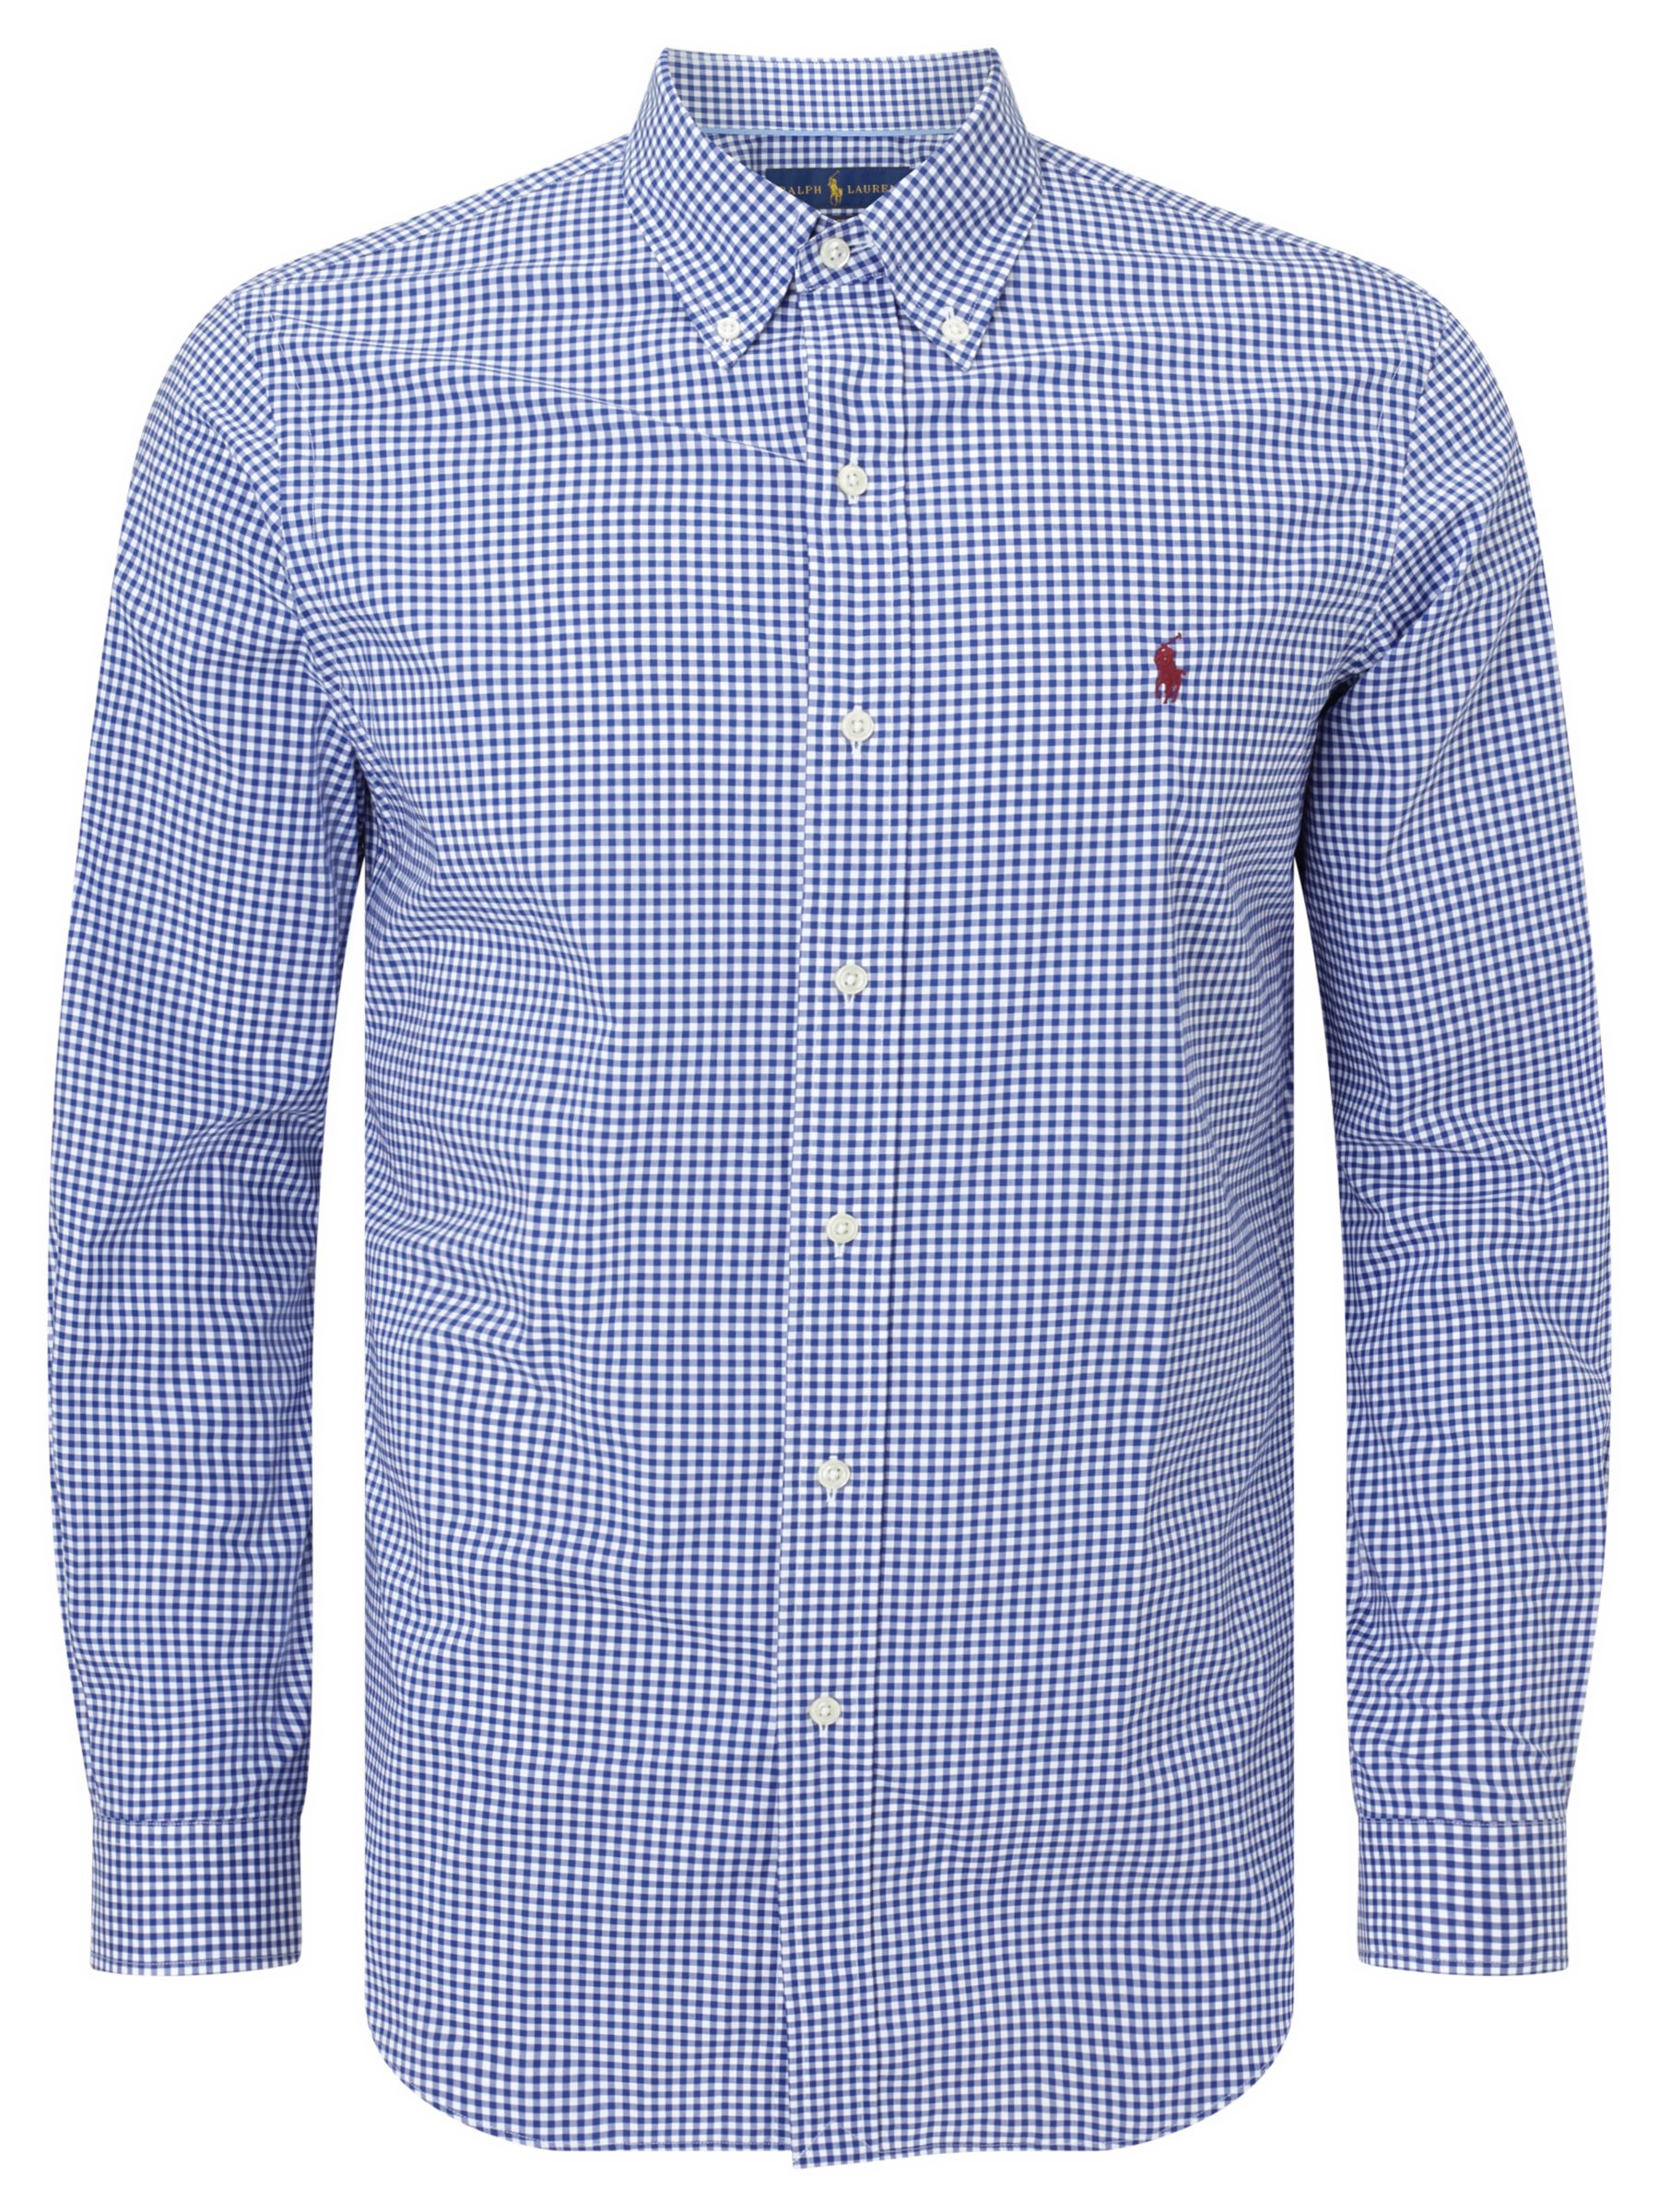 Polo Ralph Lauren Button Down Pin Point Collar Long Sleeve Shirt, Blue ...